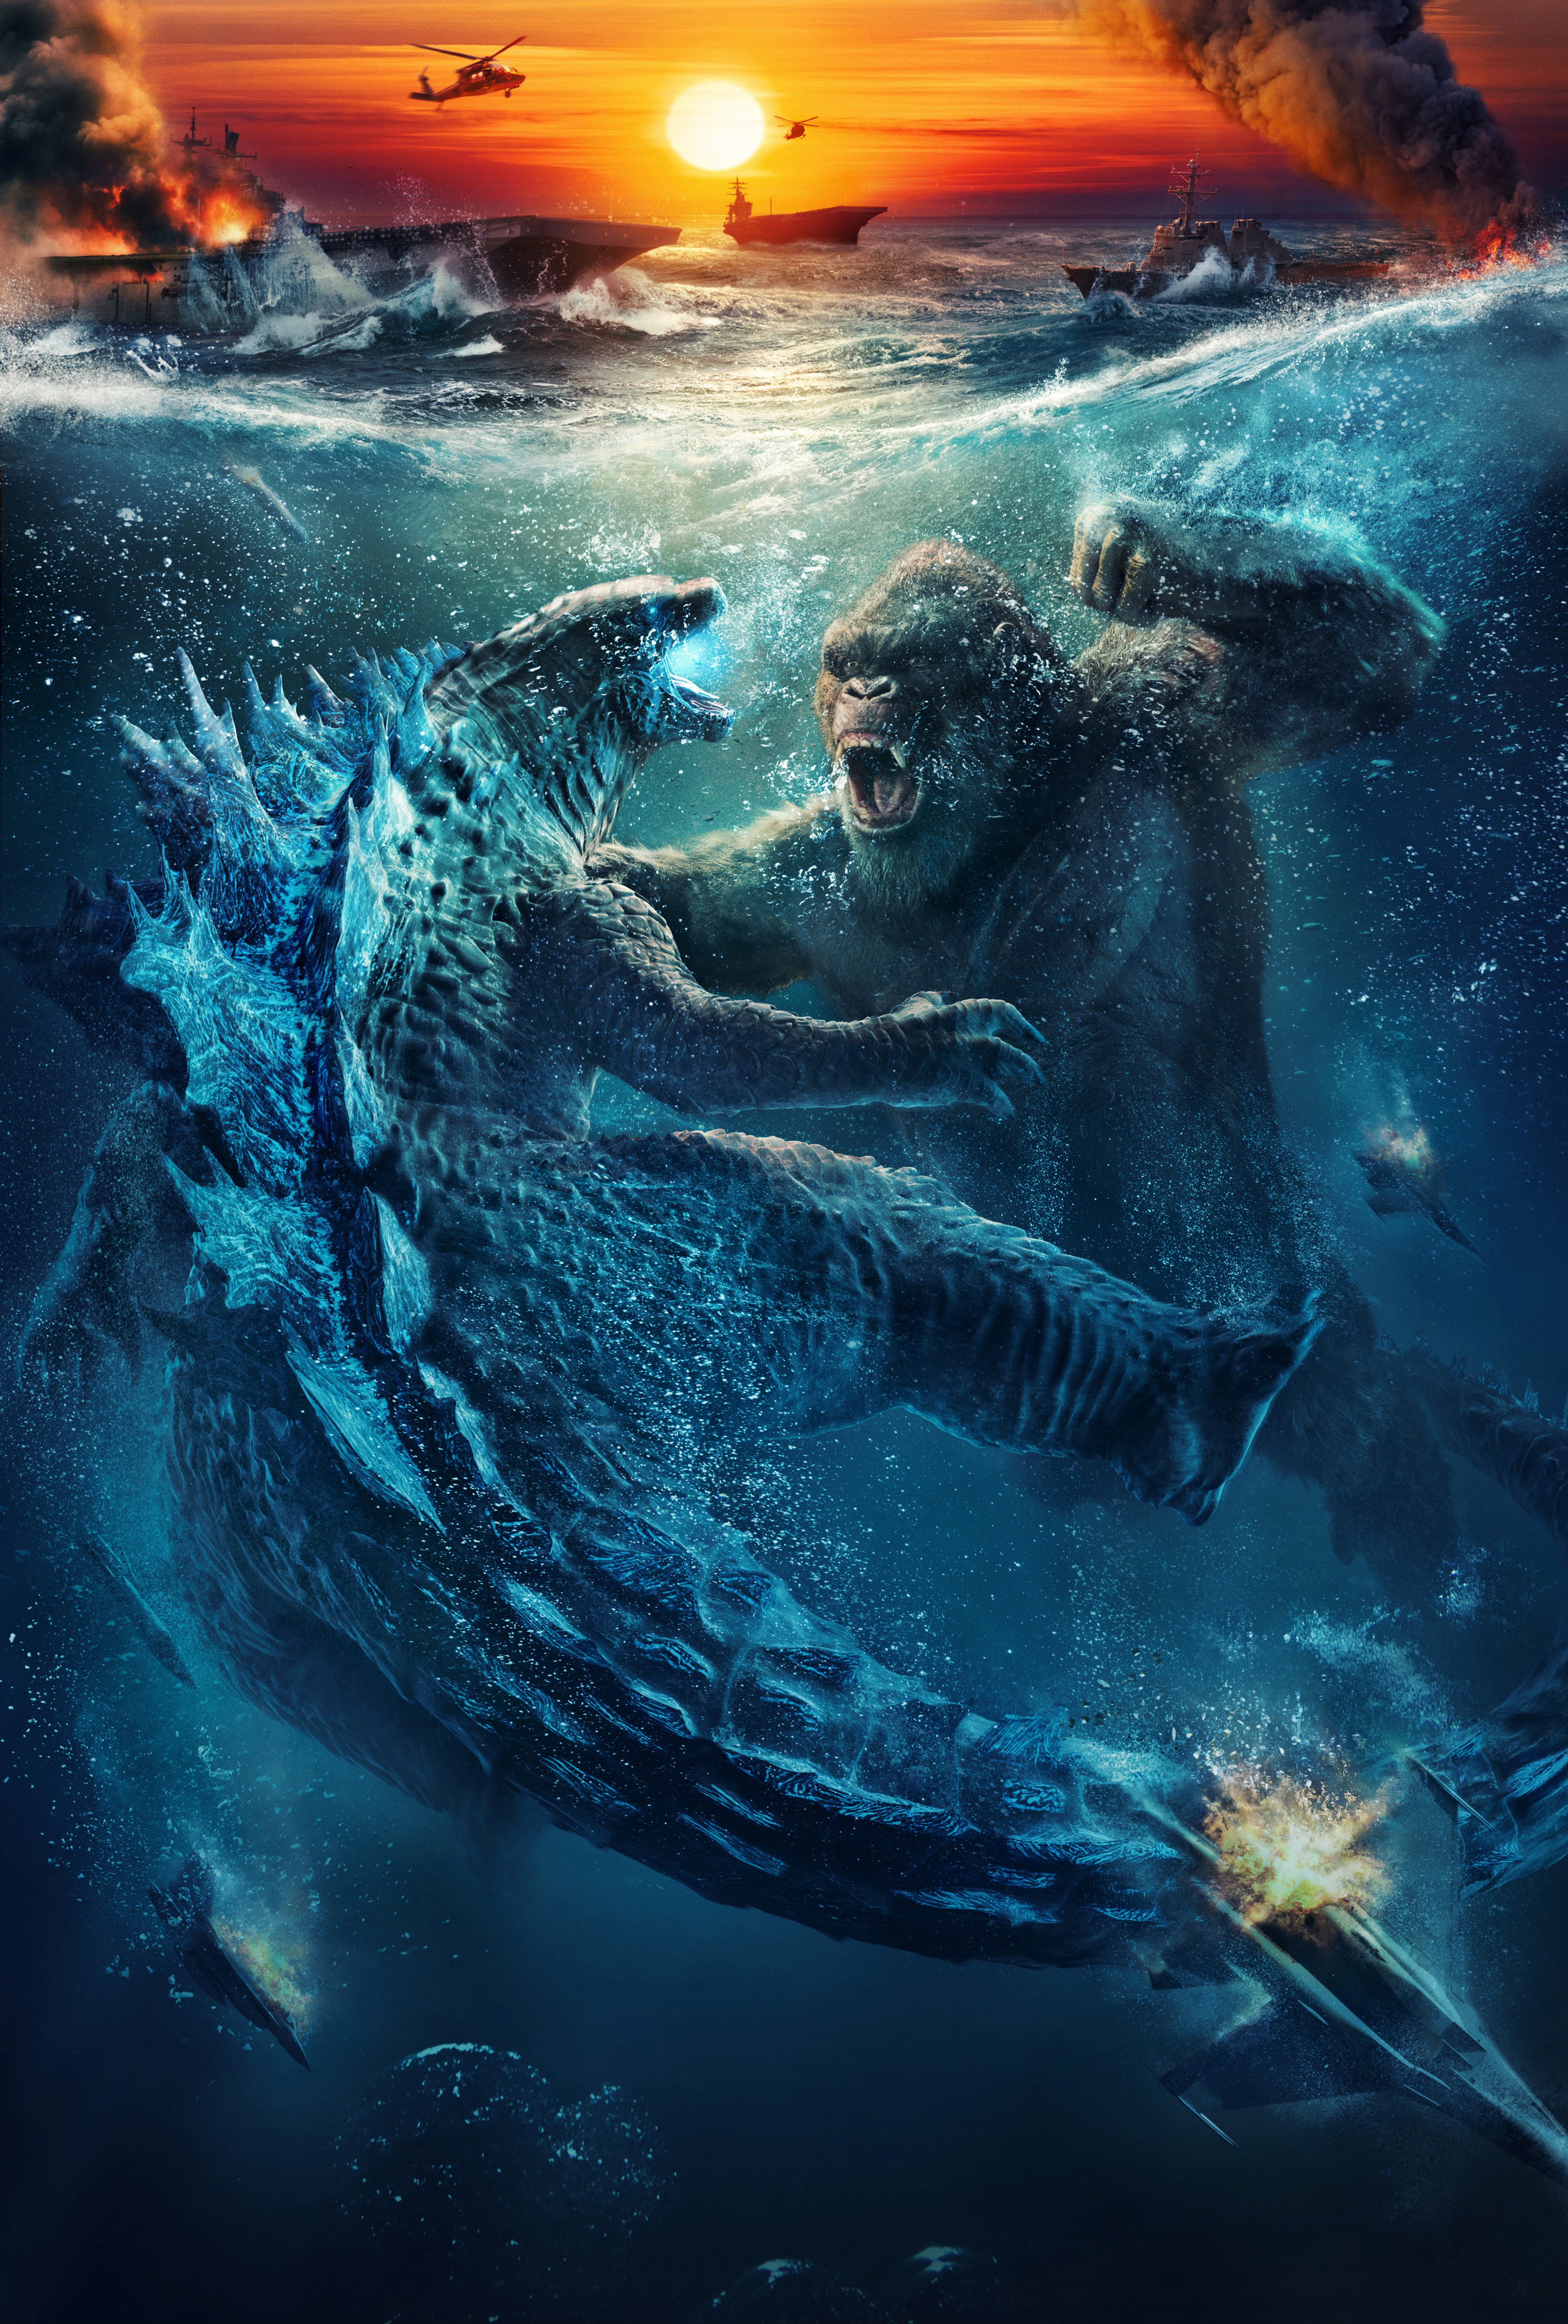 Godzilla vs Kong Wallpaper 4K, 2021 Movies, Movies